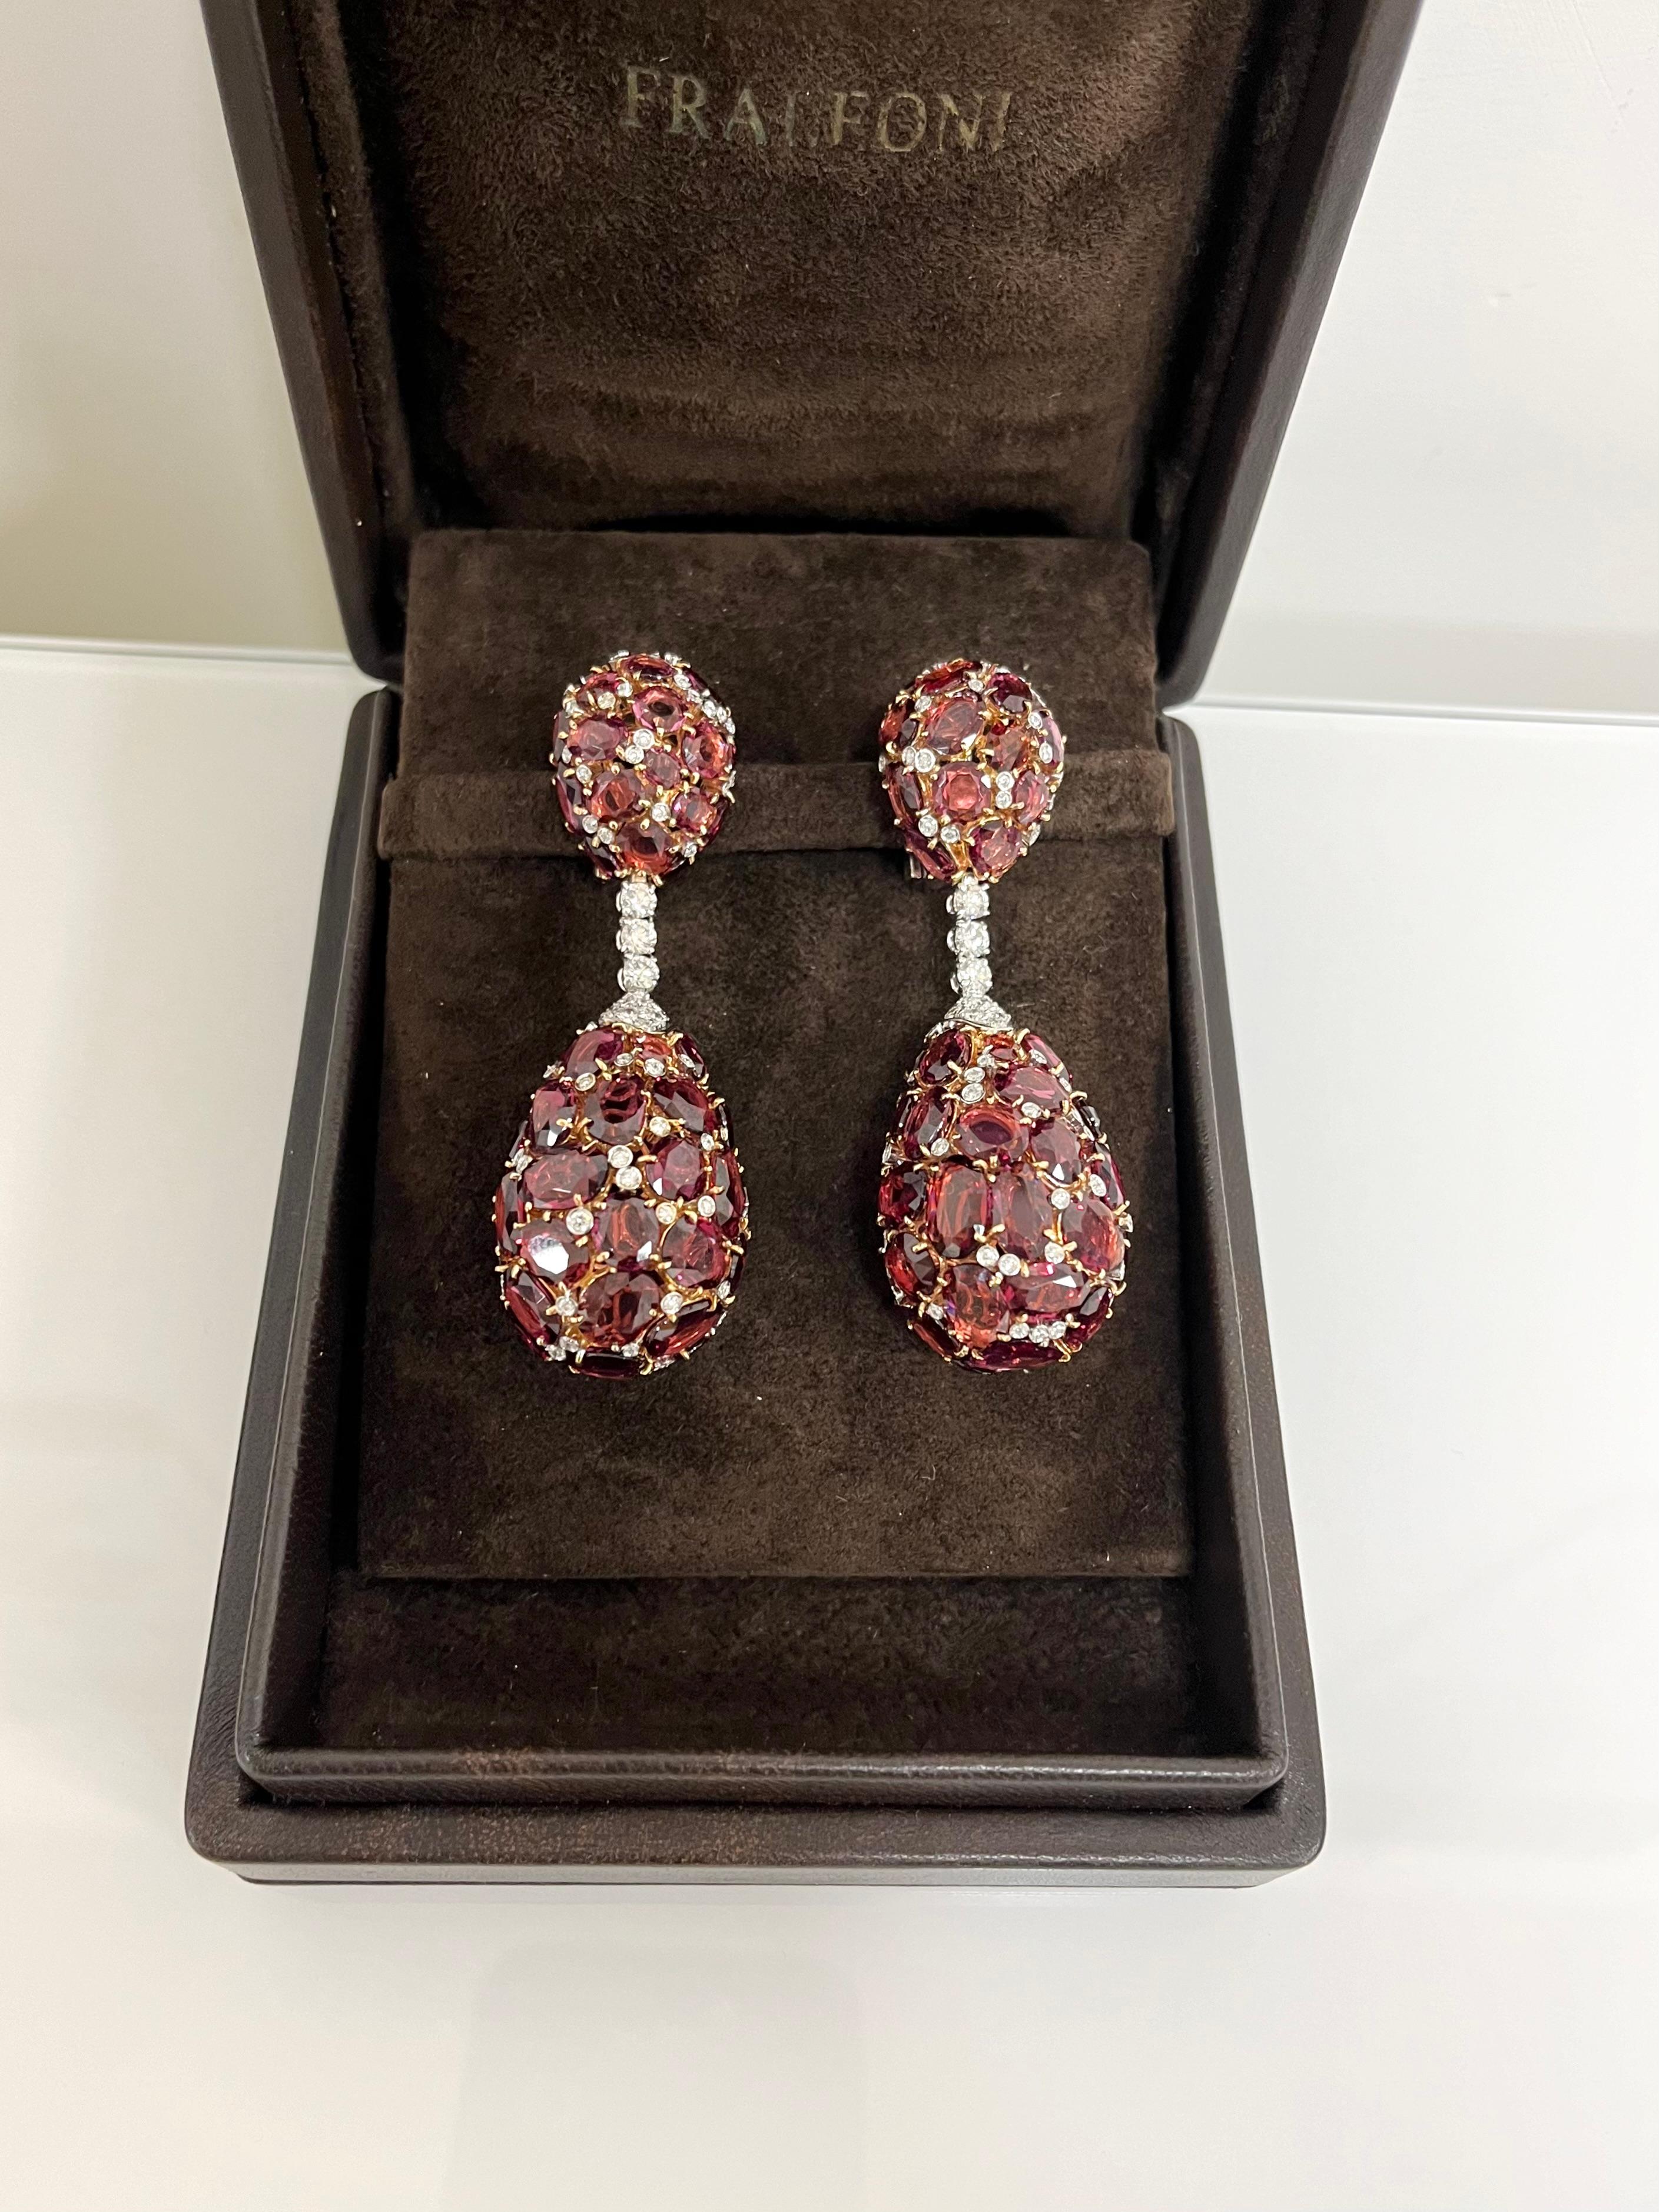 Fraleoni 18 Kt. White and Rose Gold Diamond Rodolite Pendant Earrings For Sale 1